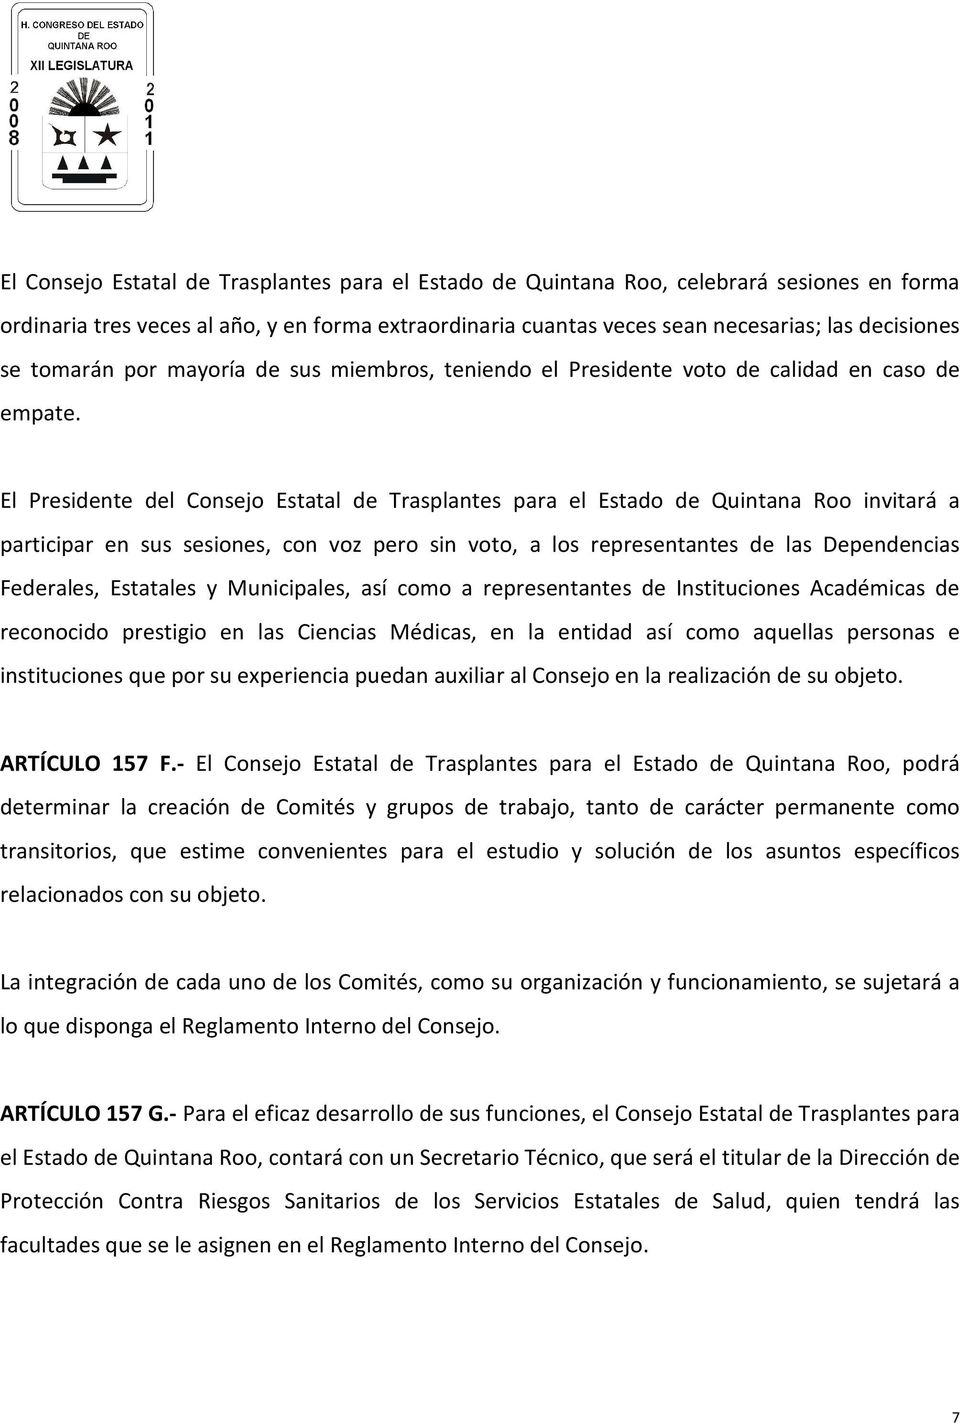 El Presidente del Consejo Estatal de Trasplantes para el Estado de Quintana Roo invitará a participar en sus sesiones, con voz pero sin voto, a los representantes de las Dependencias Federales,